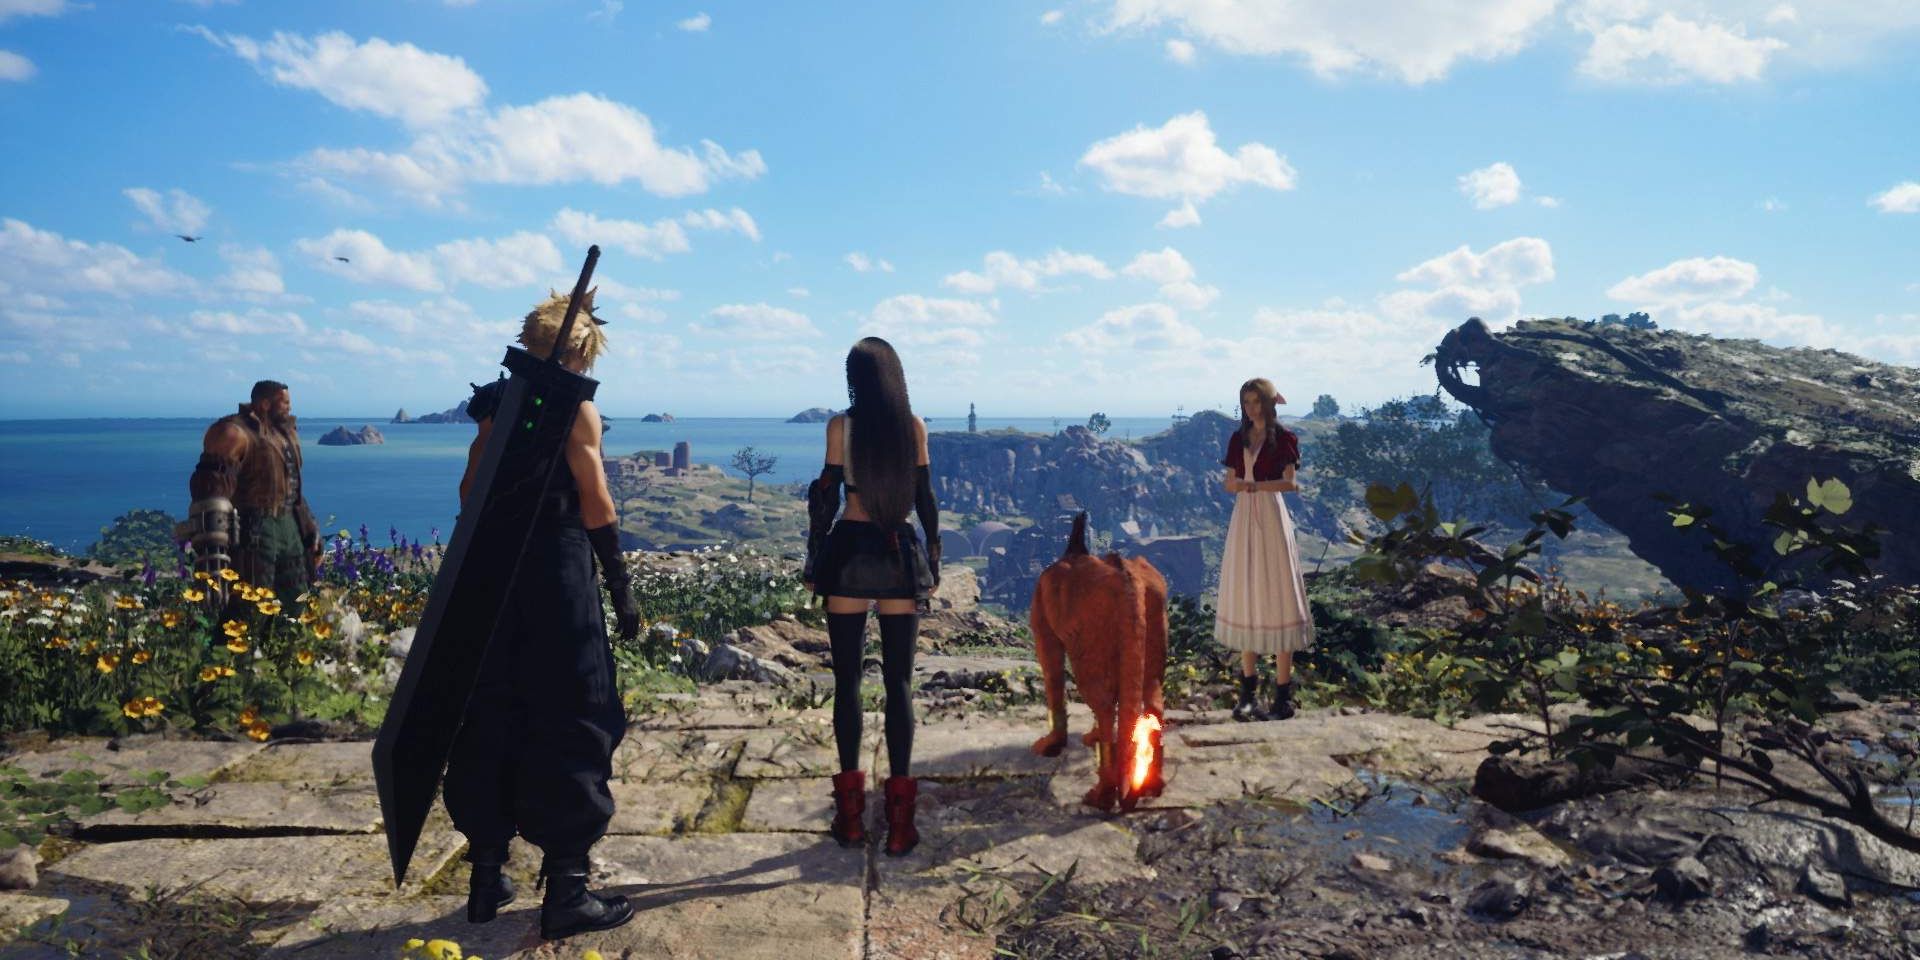 Membros do grupo FF7, incluindo Barret, Cloud, Tifa, Red XIII e Aerith, olhando para uma paisagem arborizada do topo de um penhasco.